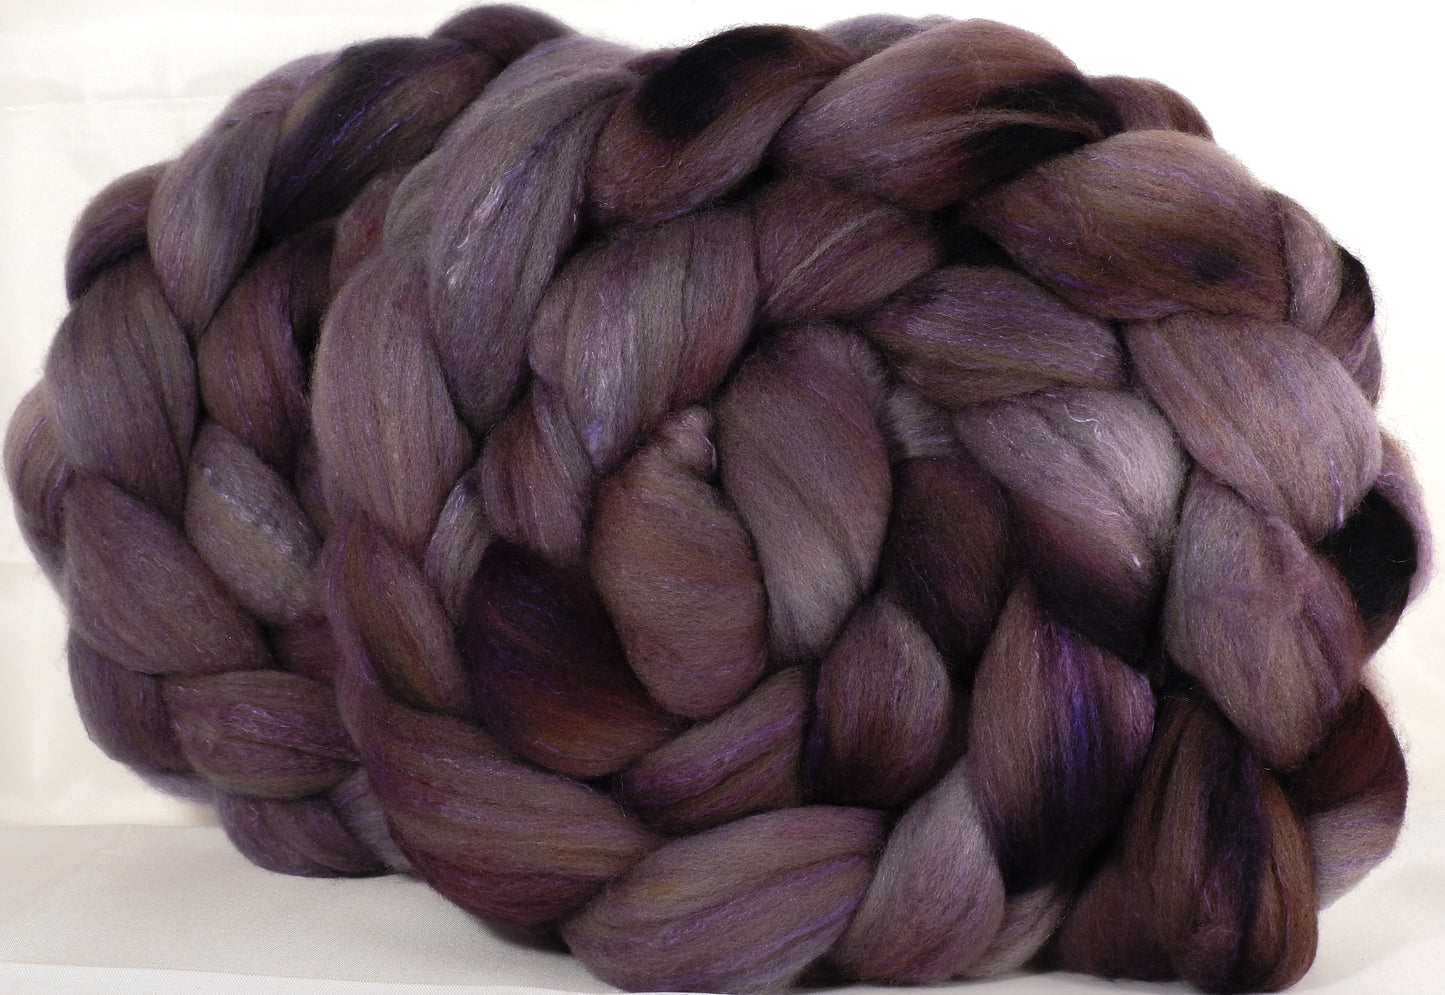 Organic polwarth /Tussah silk (80/20) -Squirrel- (5.4 oz.) - Inglenook Fibers